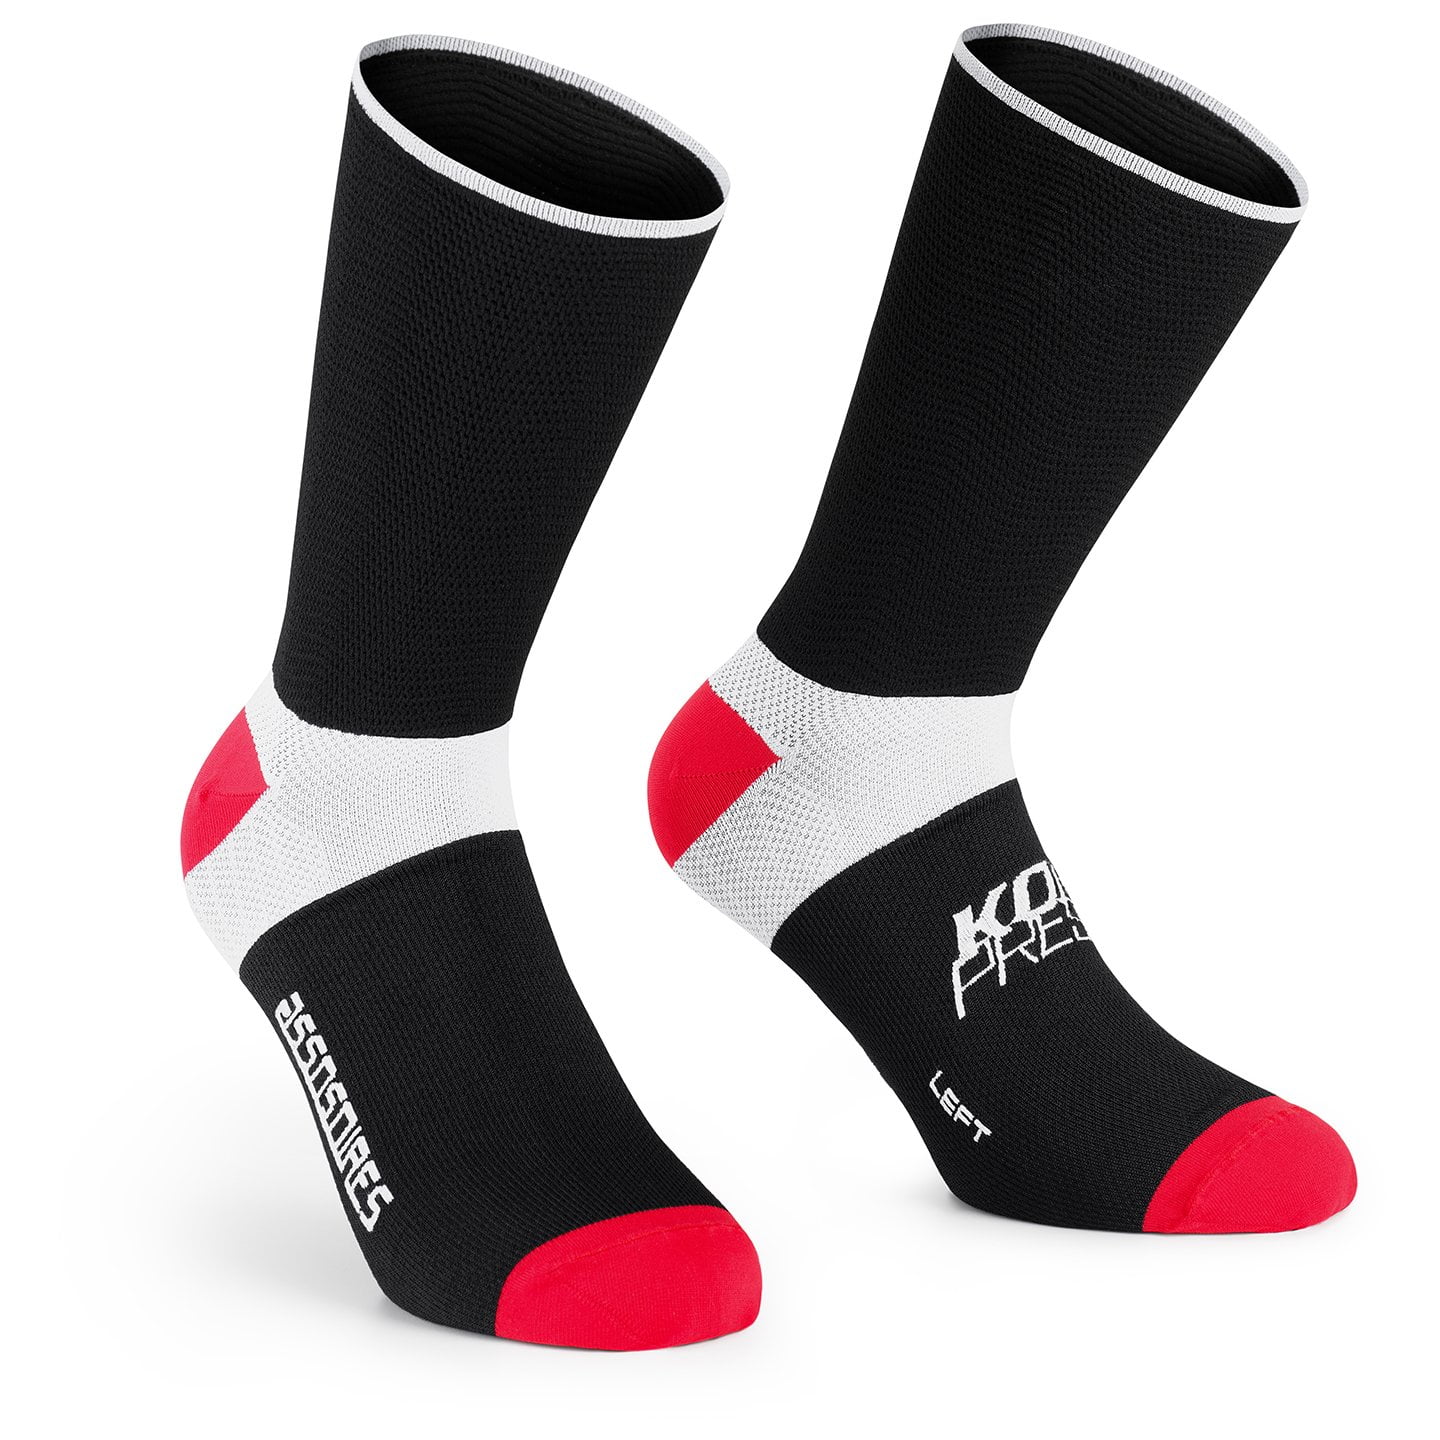 ASSOS Kompressor Compression Cycling Socks Cycling Socks, for men, size M-L, MTB socks, Cycling clothing